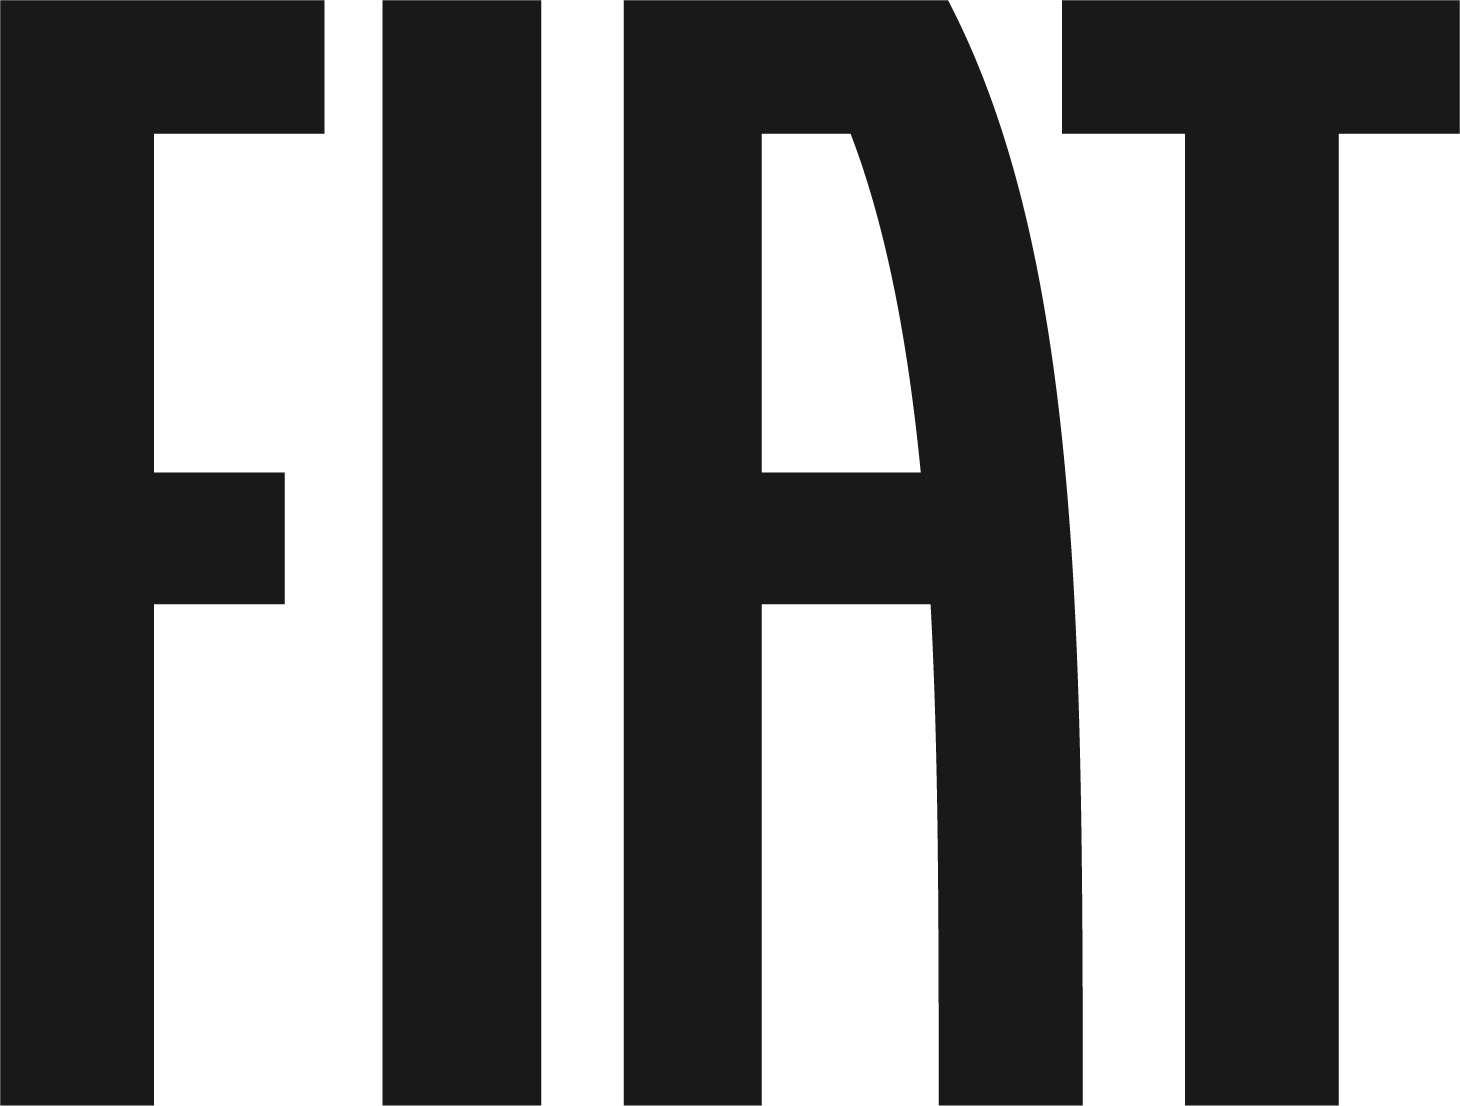 Логотип Fiat - офіційний сайт Fiat